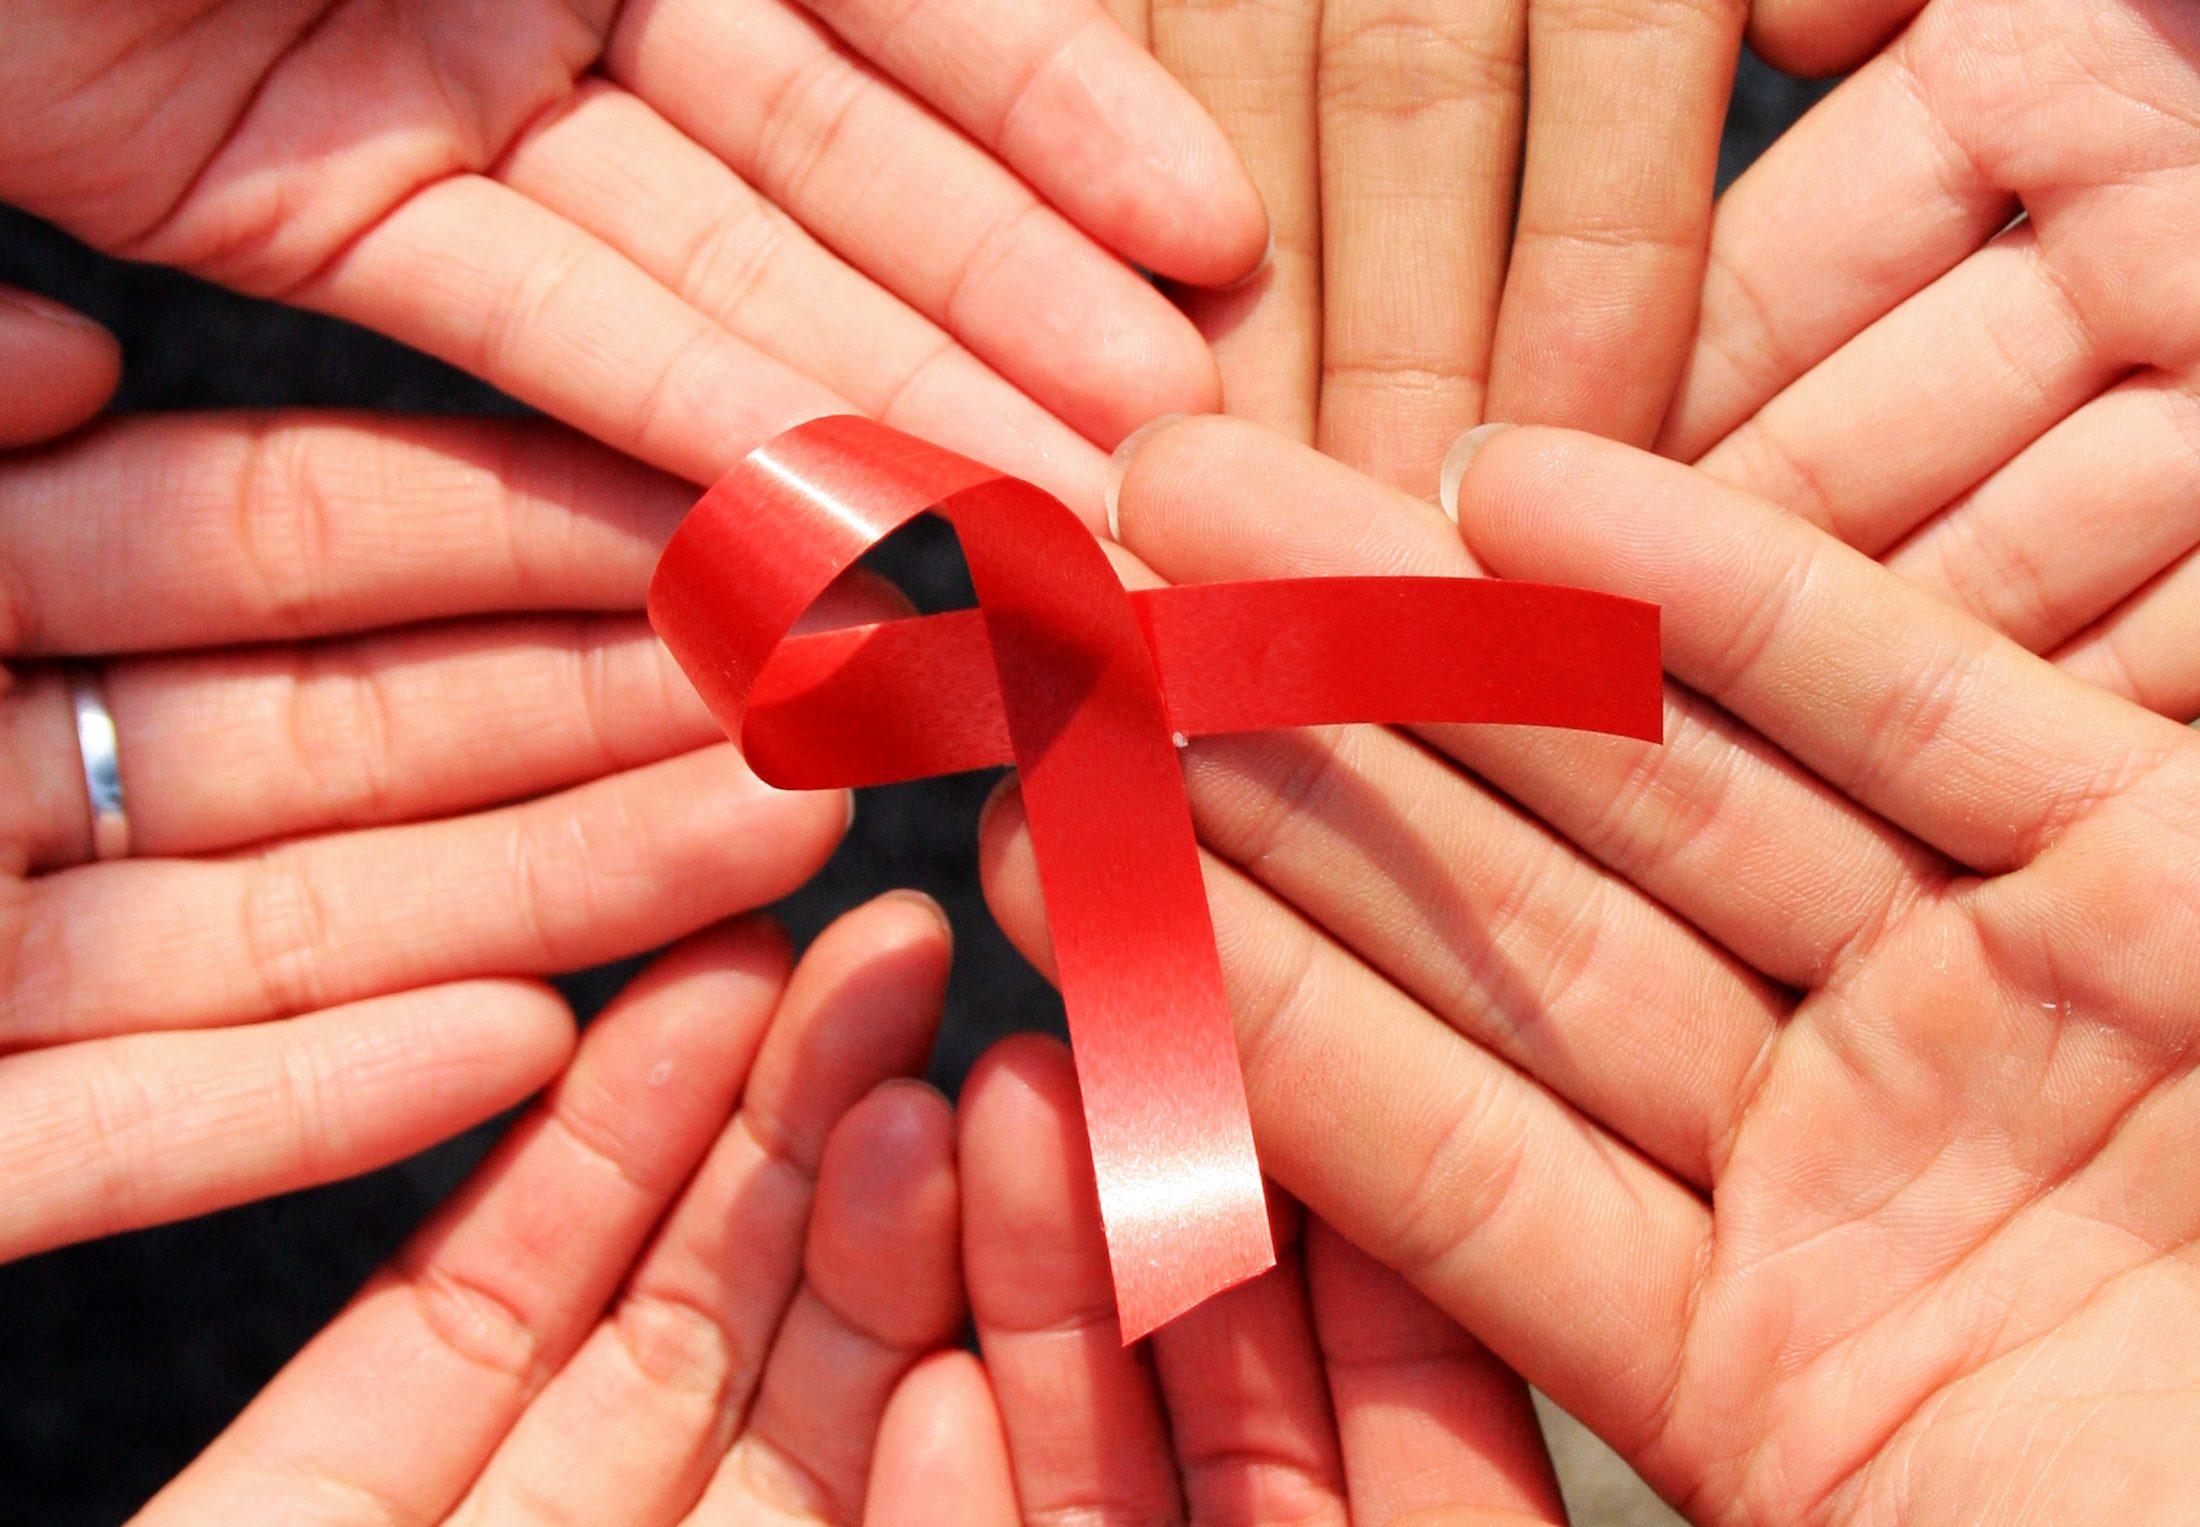 Na Justiça, pessoas com HIV positivo tentam recuperar os benefícios (Foto Divulgação)